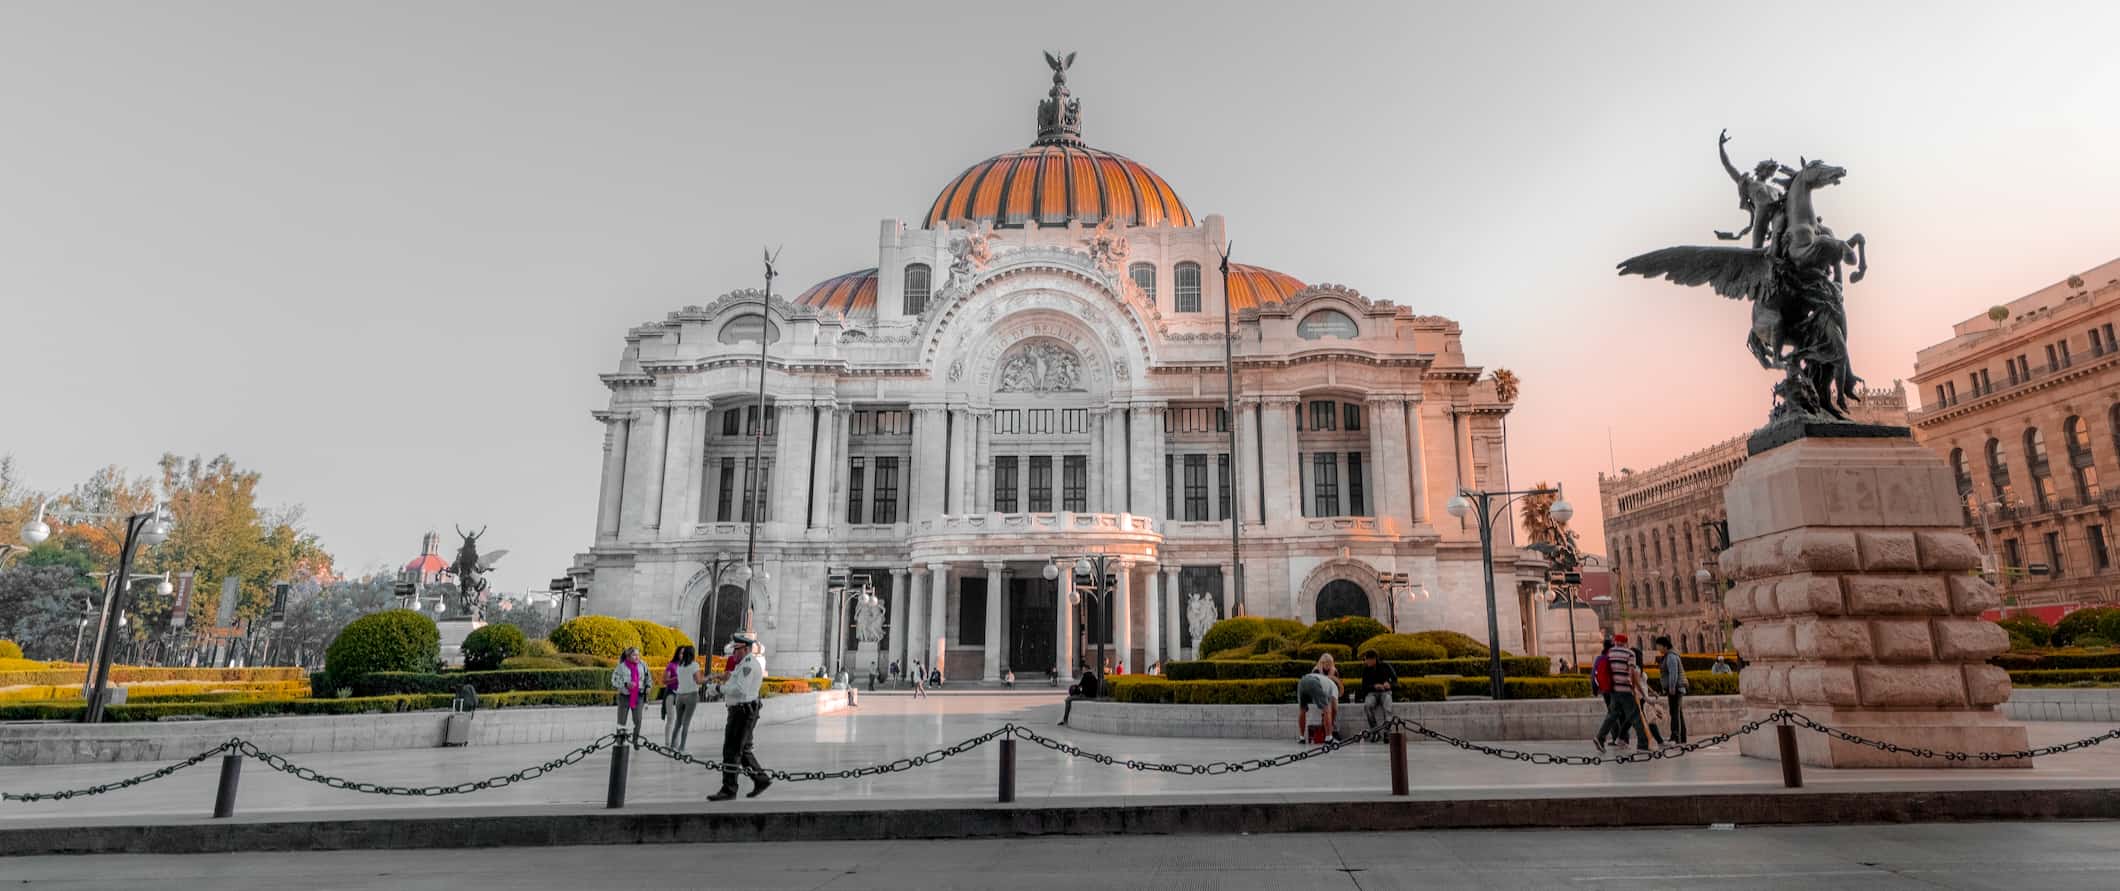 O famoso Palácio das Belas Artes na Cidade do México, México